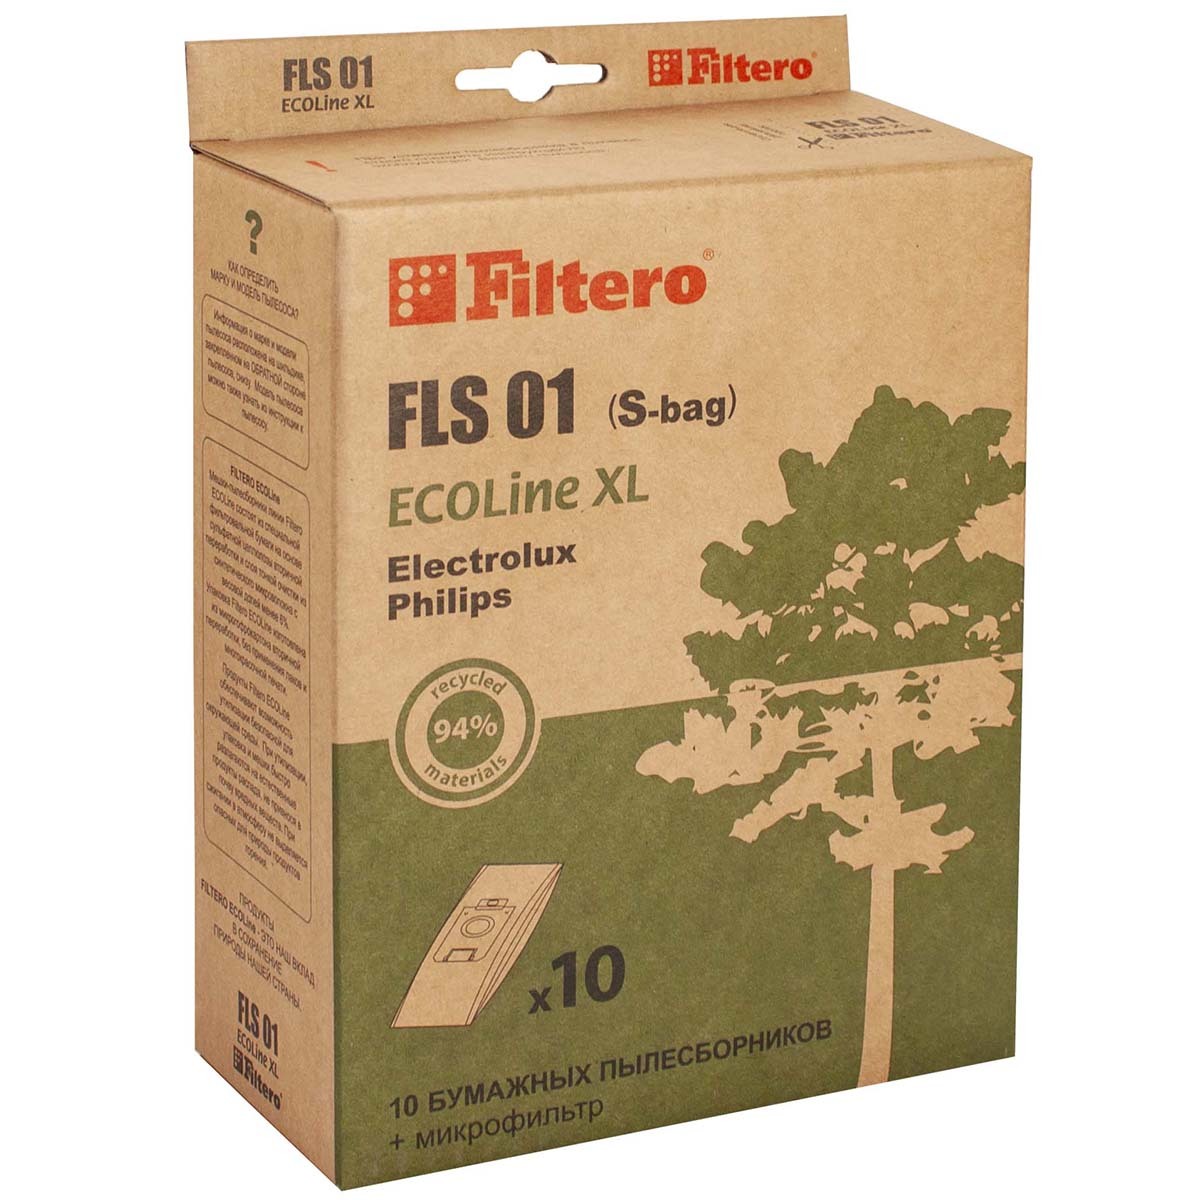 Пылесборники Filtero FLS 01 (S-bag) (10+) XL ECOLine пылесборники filtero fls 01 s bag 10 xl ecoline